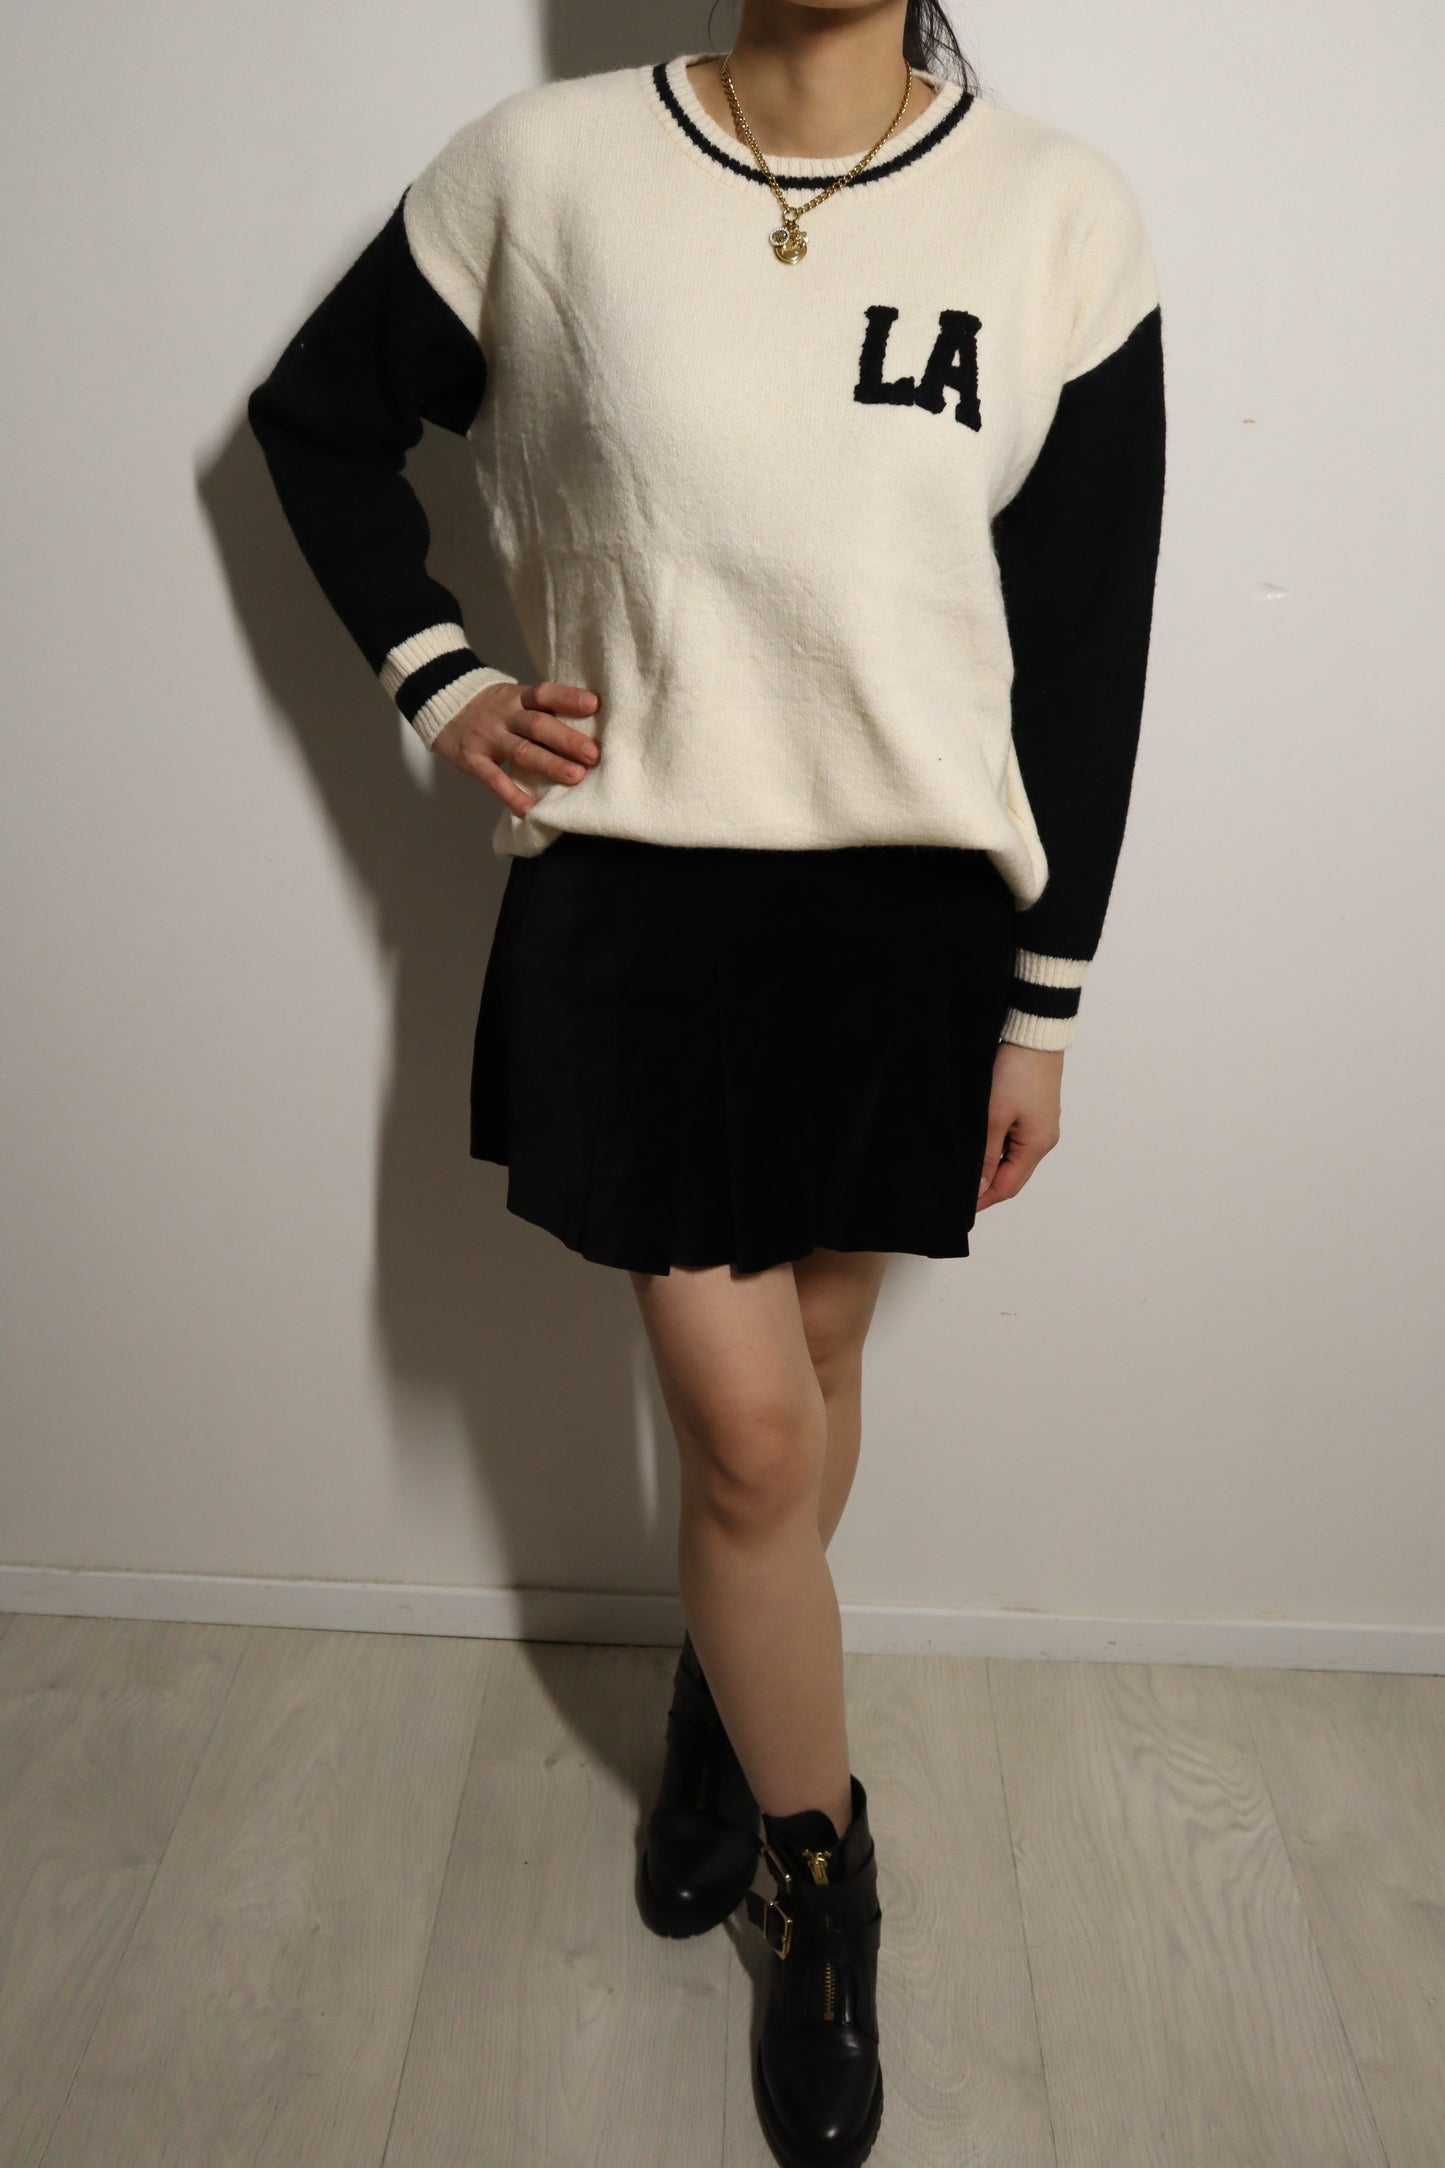 Sweater LA-White/Black